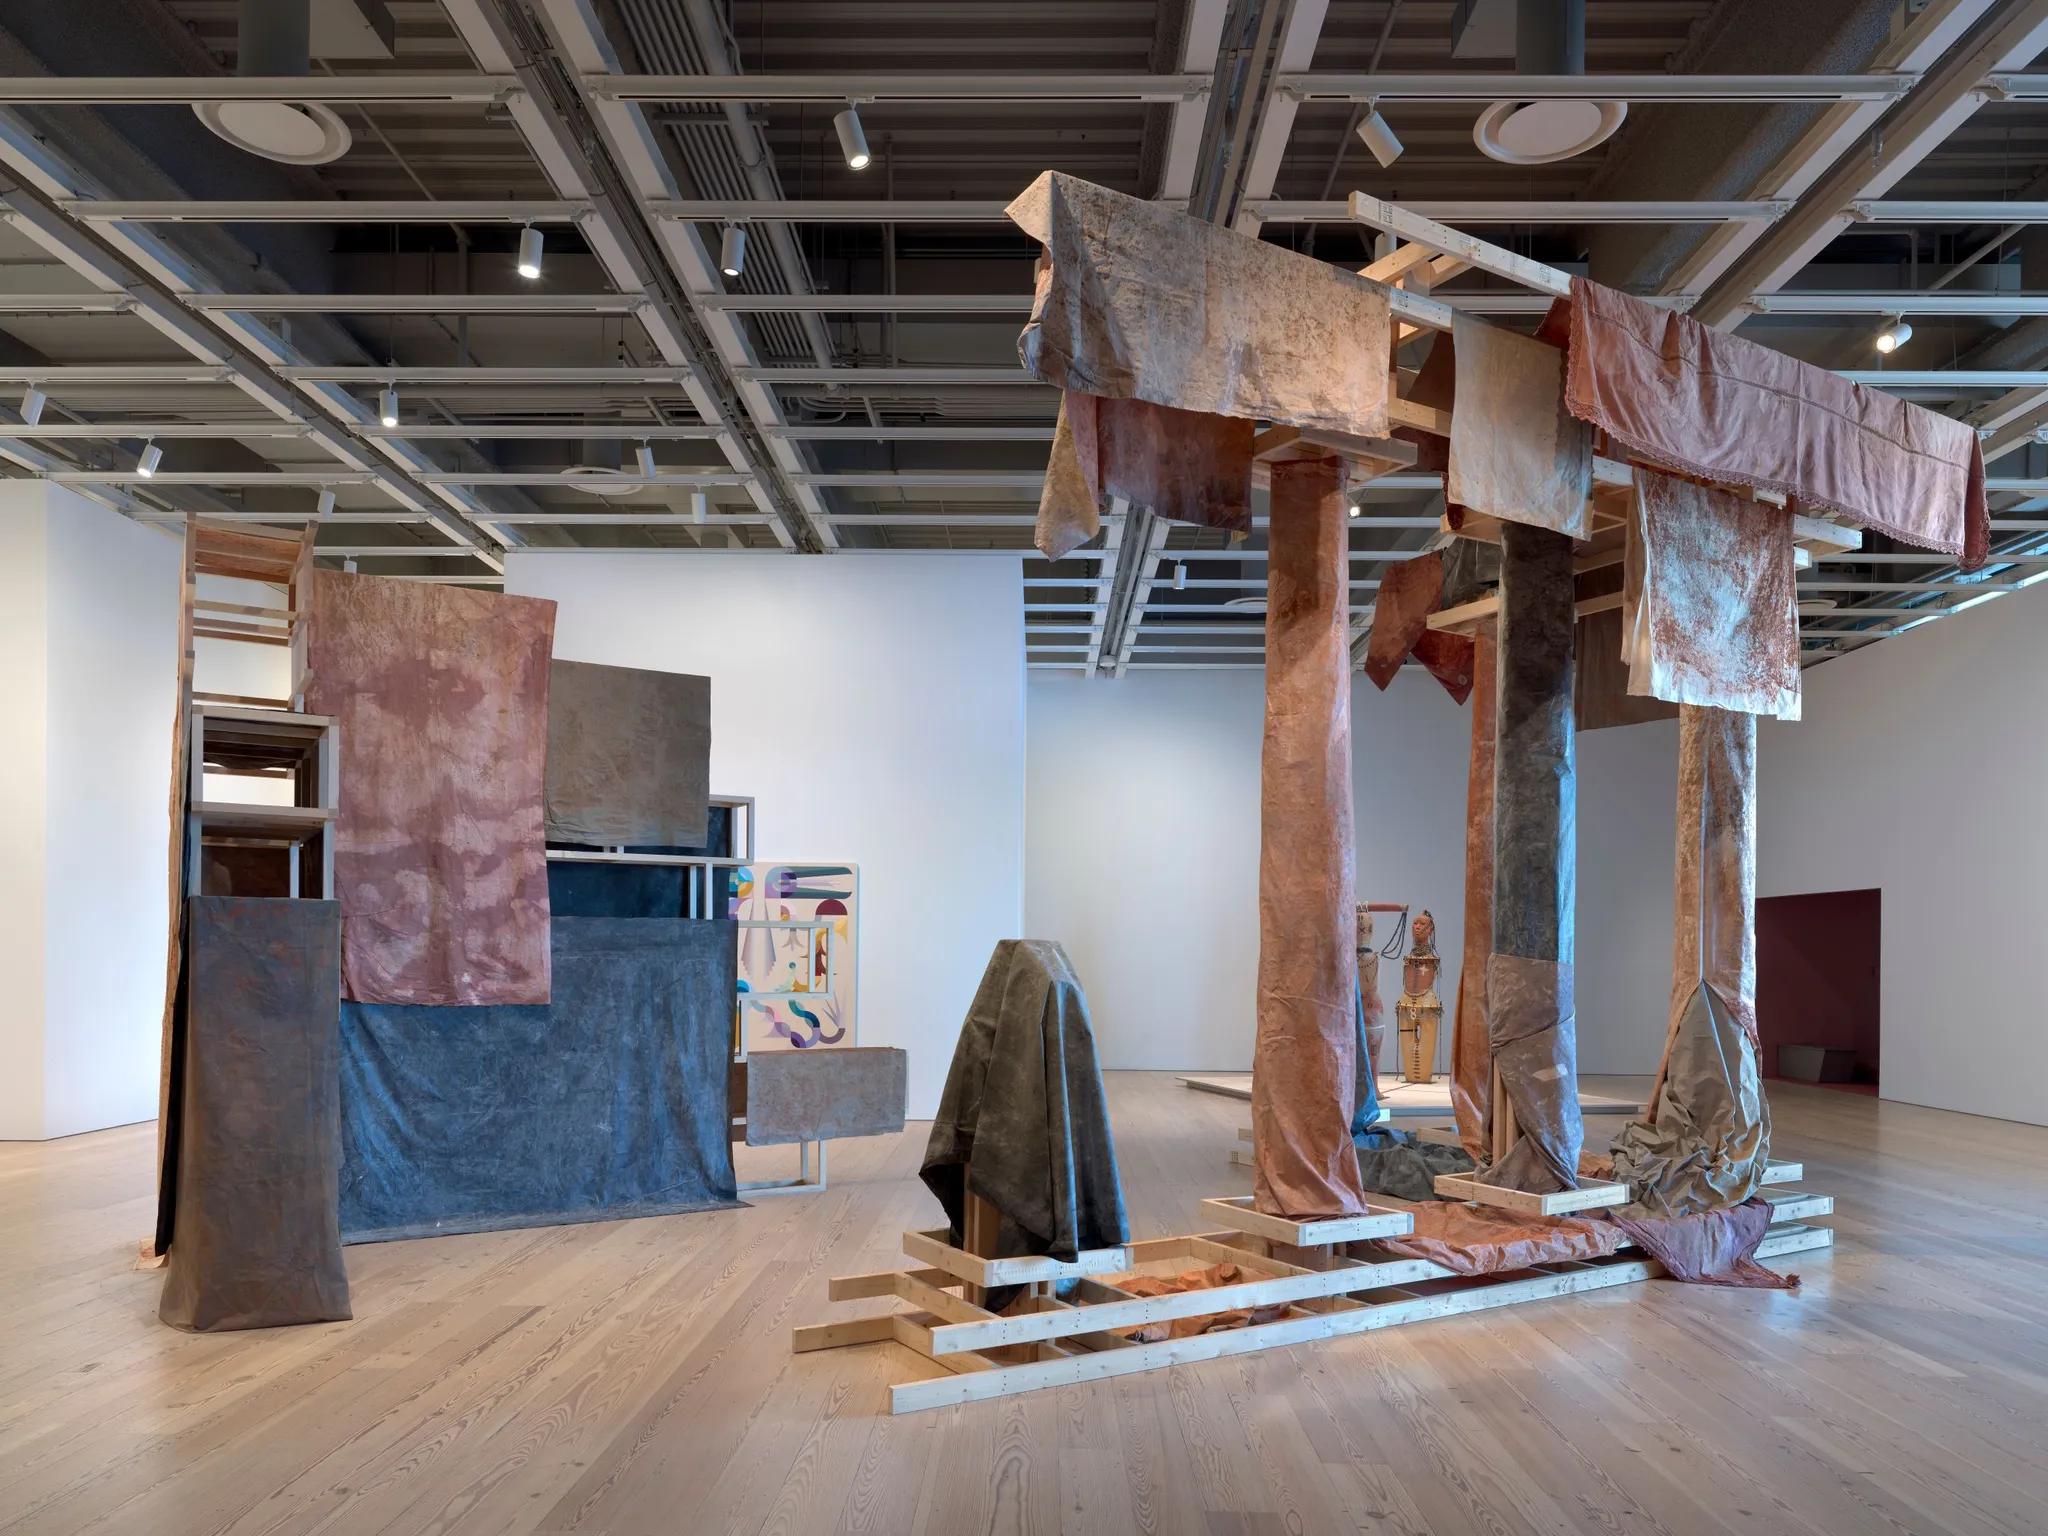 Hetzelfde kunstwerk gepresenteerd in een andere, kleinere opstelling en ruimte (van het Whitney Museum in New York), met een open plafond dat de ventilatie en andere voorzieningen laat zien